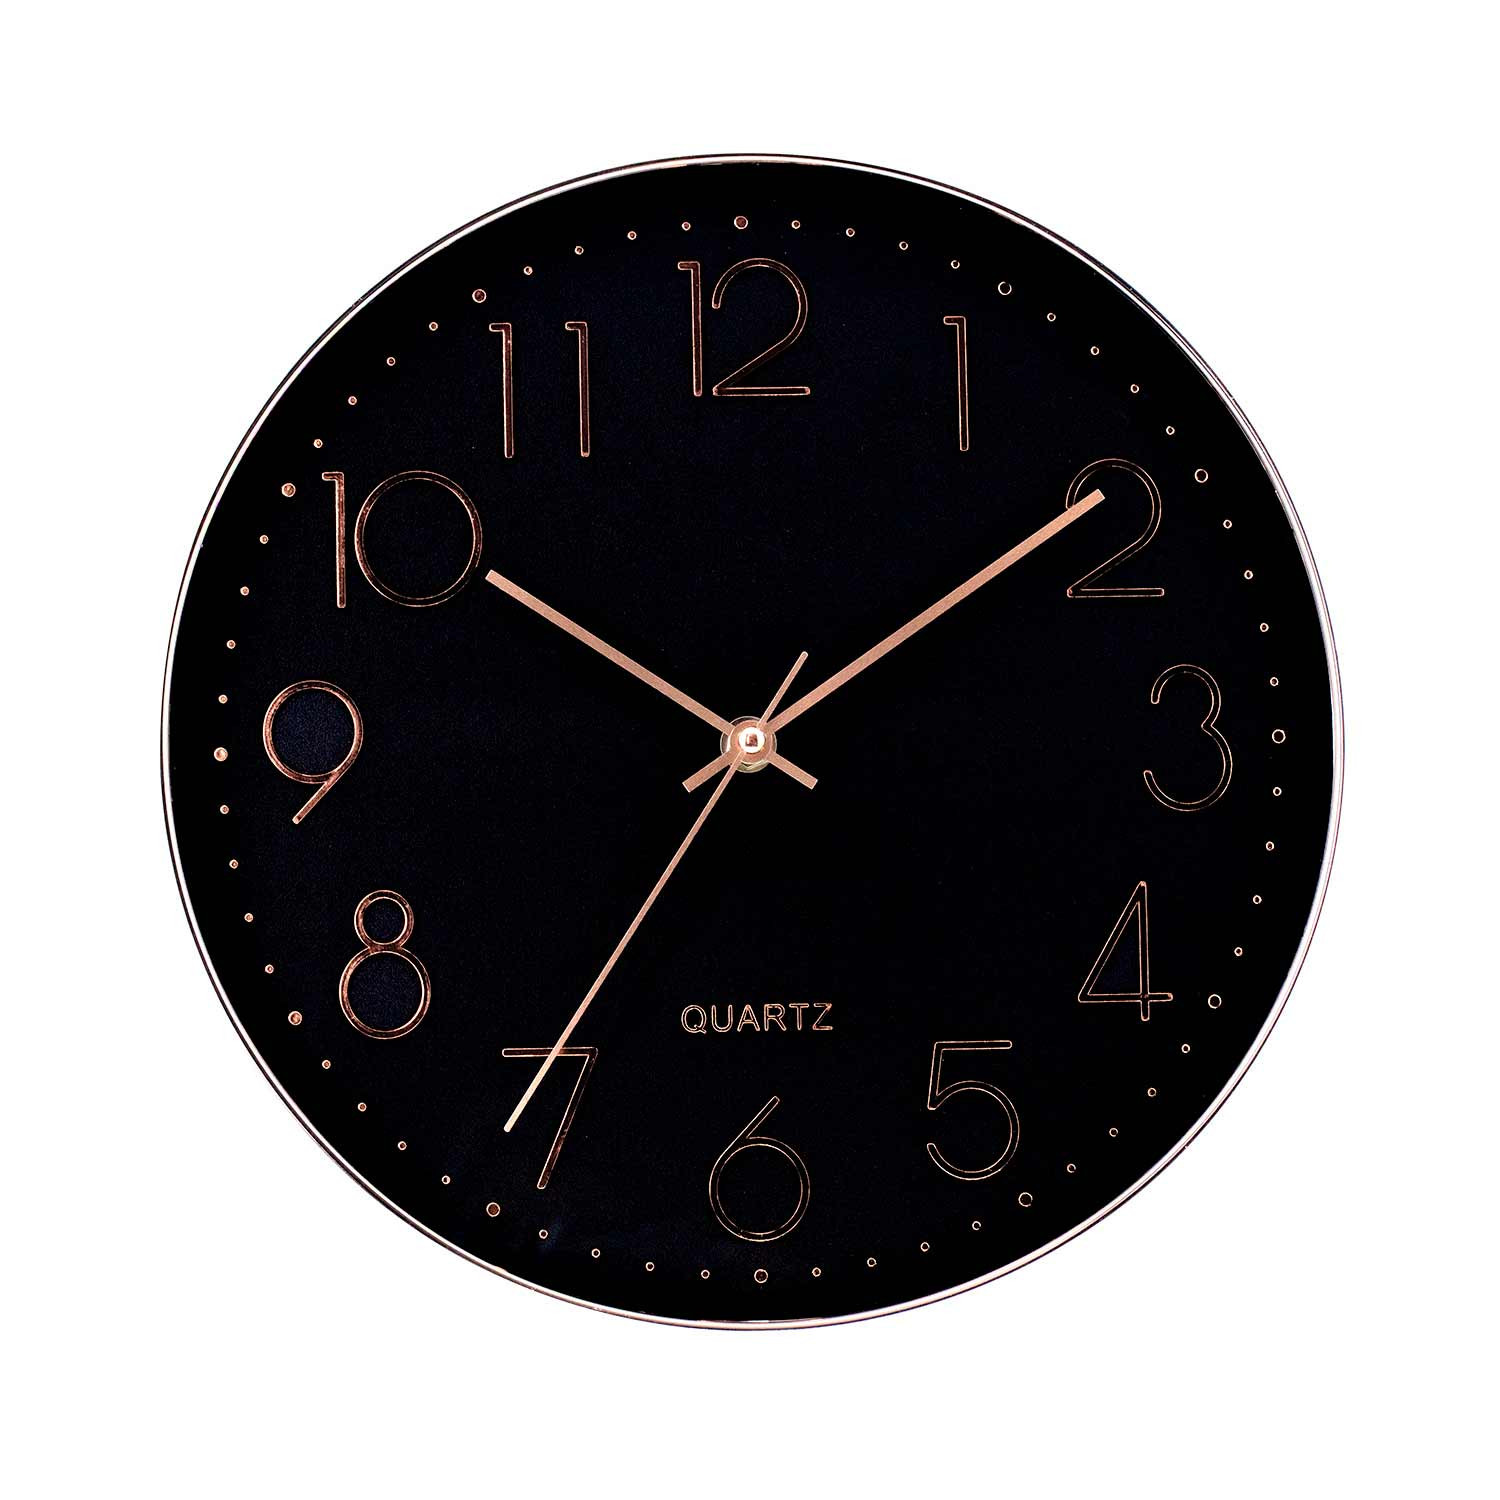 Reloj de Pared Moderno en Relieve con Esfera Negra Ø30 cm O91 Relojes de Pared 1